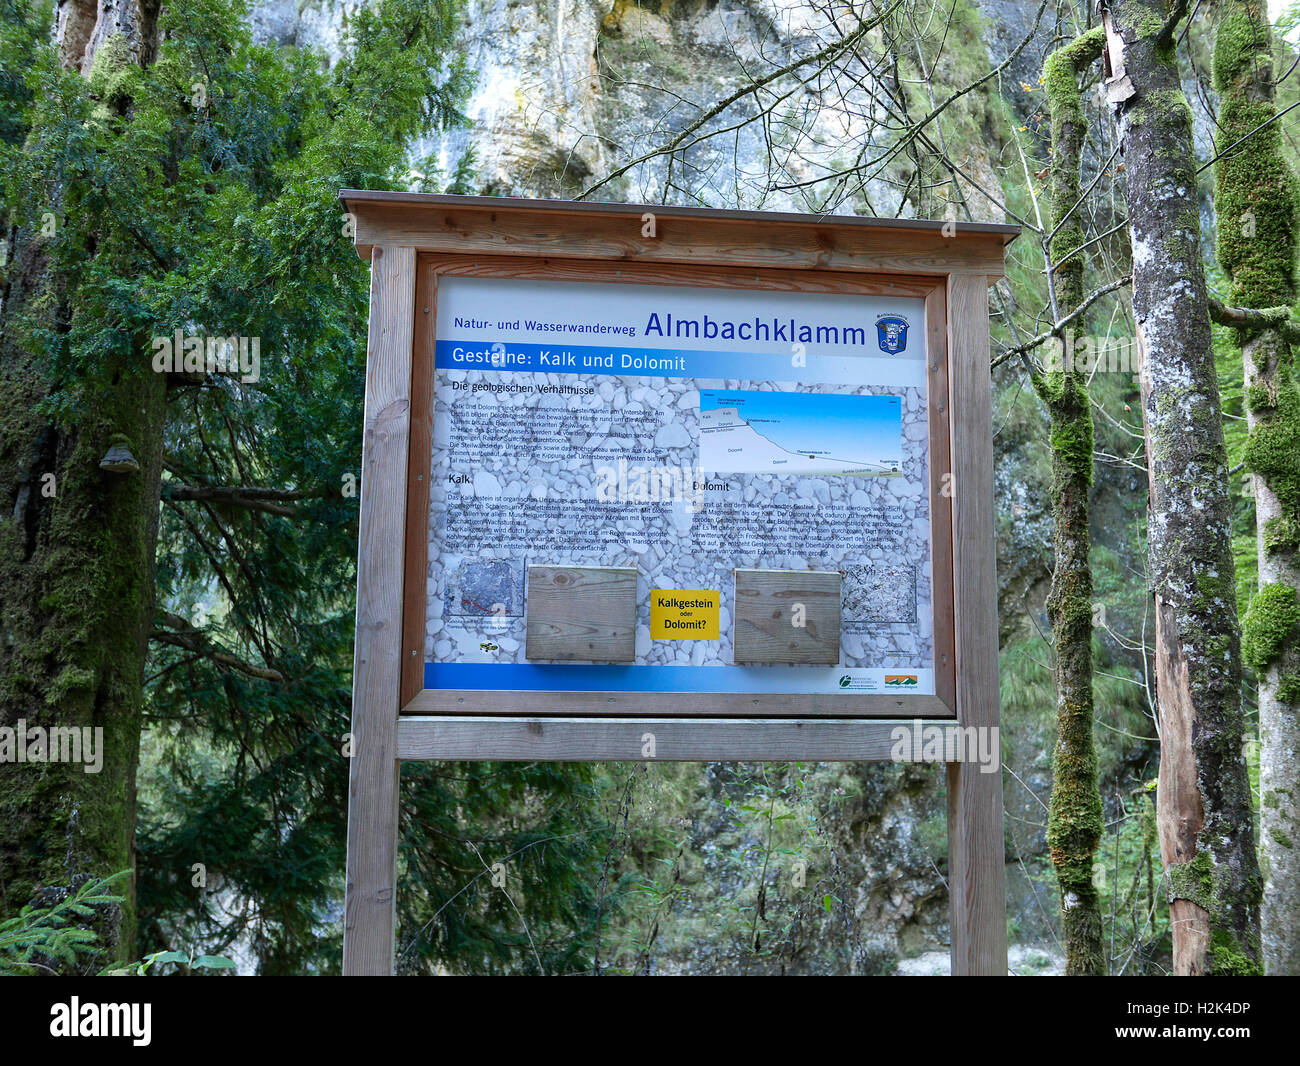 Le parc national de Berchtesgaden Bischofswiesen Almbach Canyon Gorges Sigmund-thun klamm signer Bavière Allemagne Europe Banque D'Images